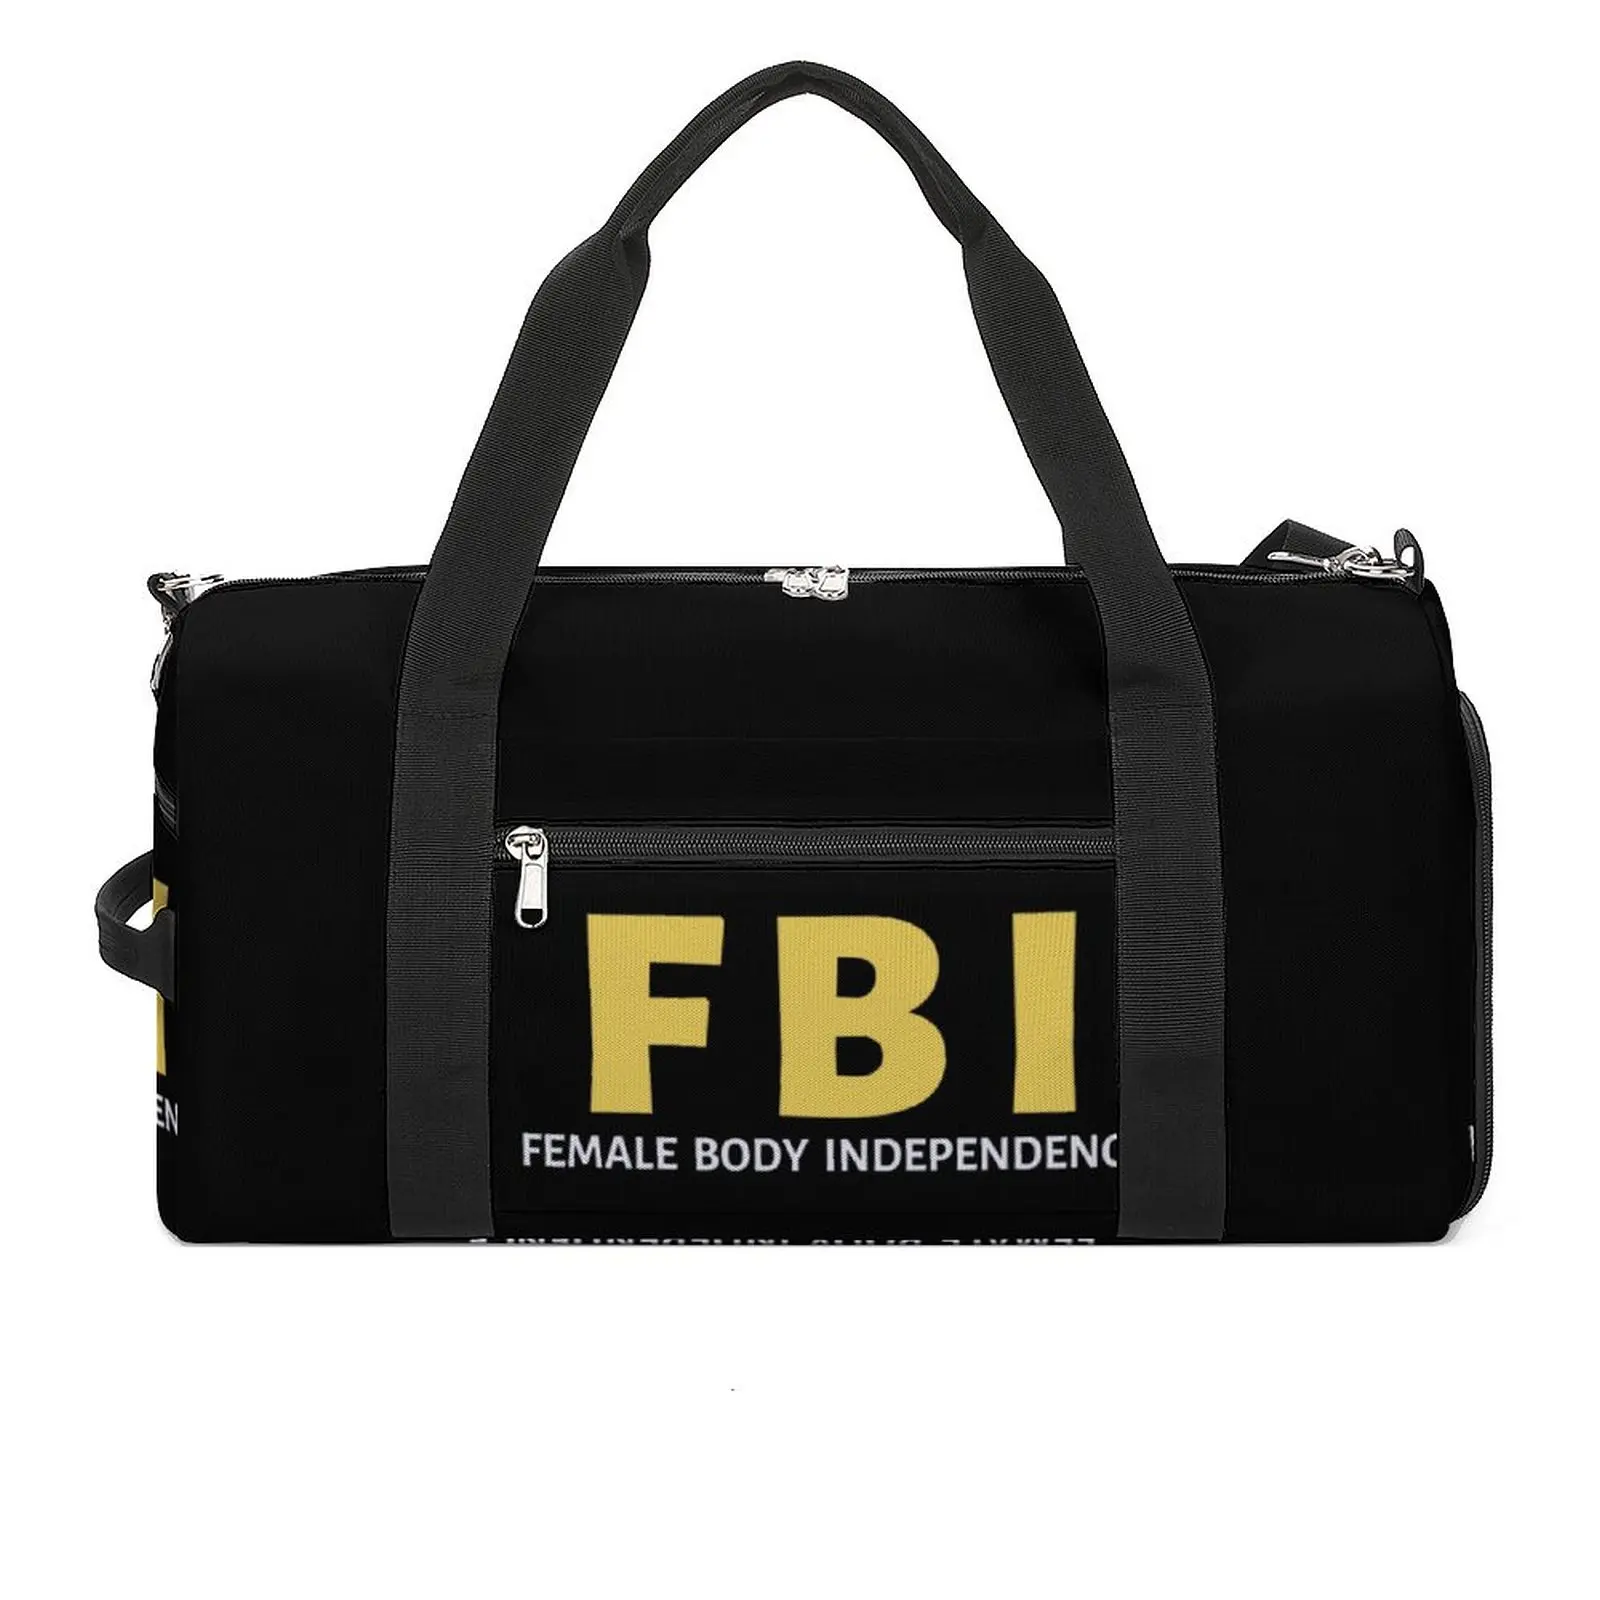 Спортивная сумка FBI Female Body Independence, багаж репродуктивных прав, спортивные сумки, мужские дизайнерские сумки для фитнеса, водонепроницаемые сумки